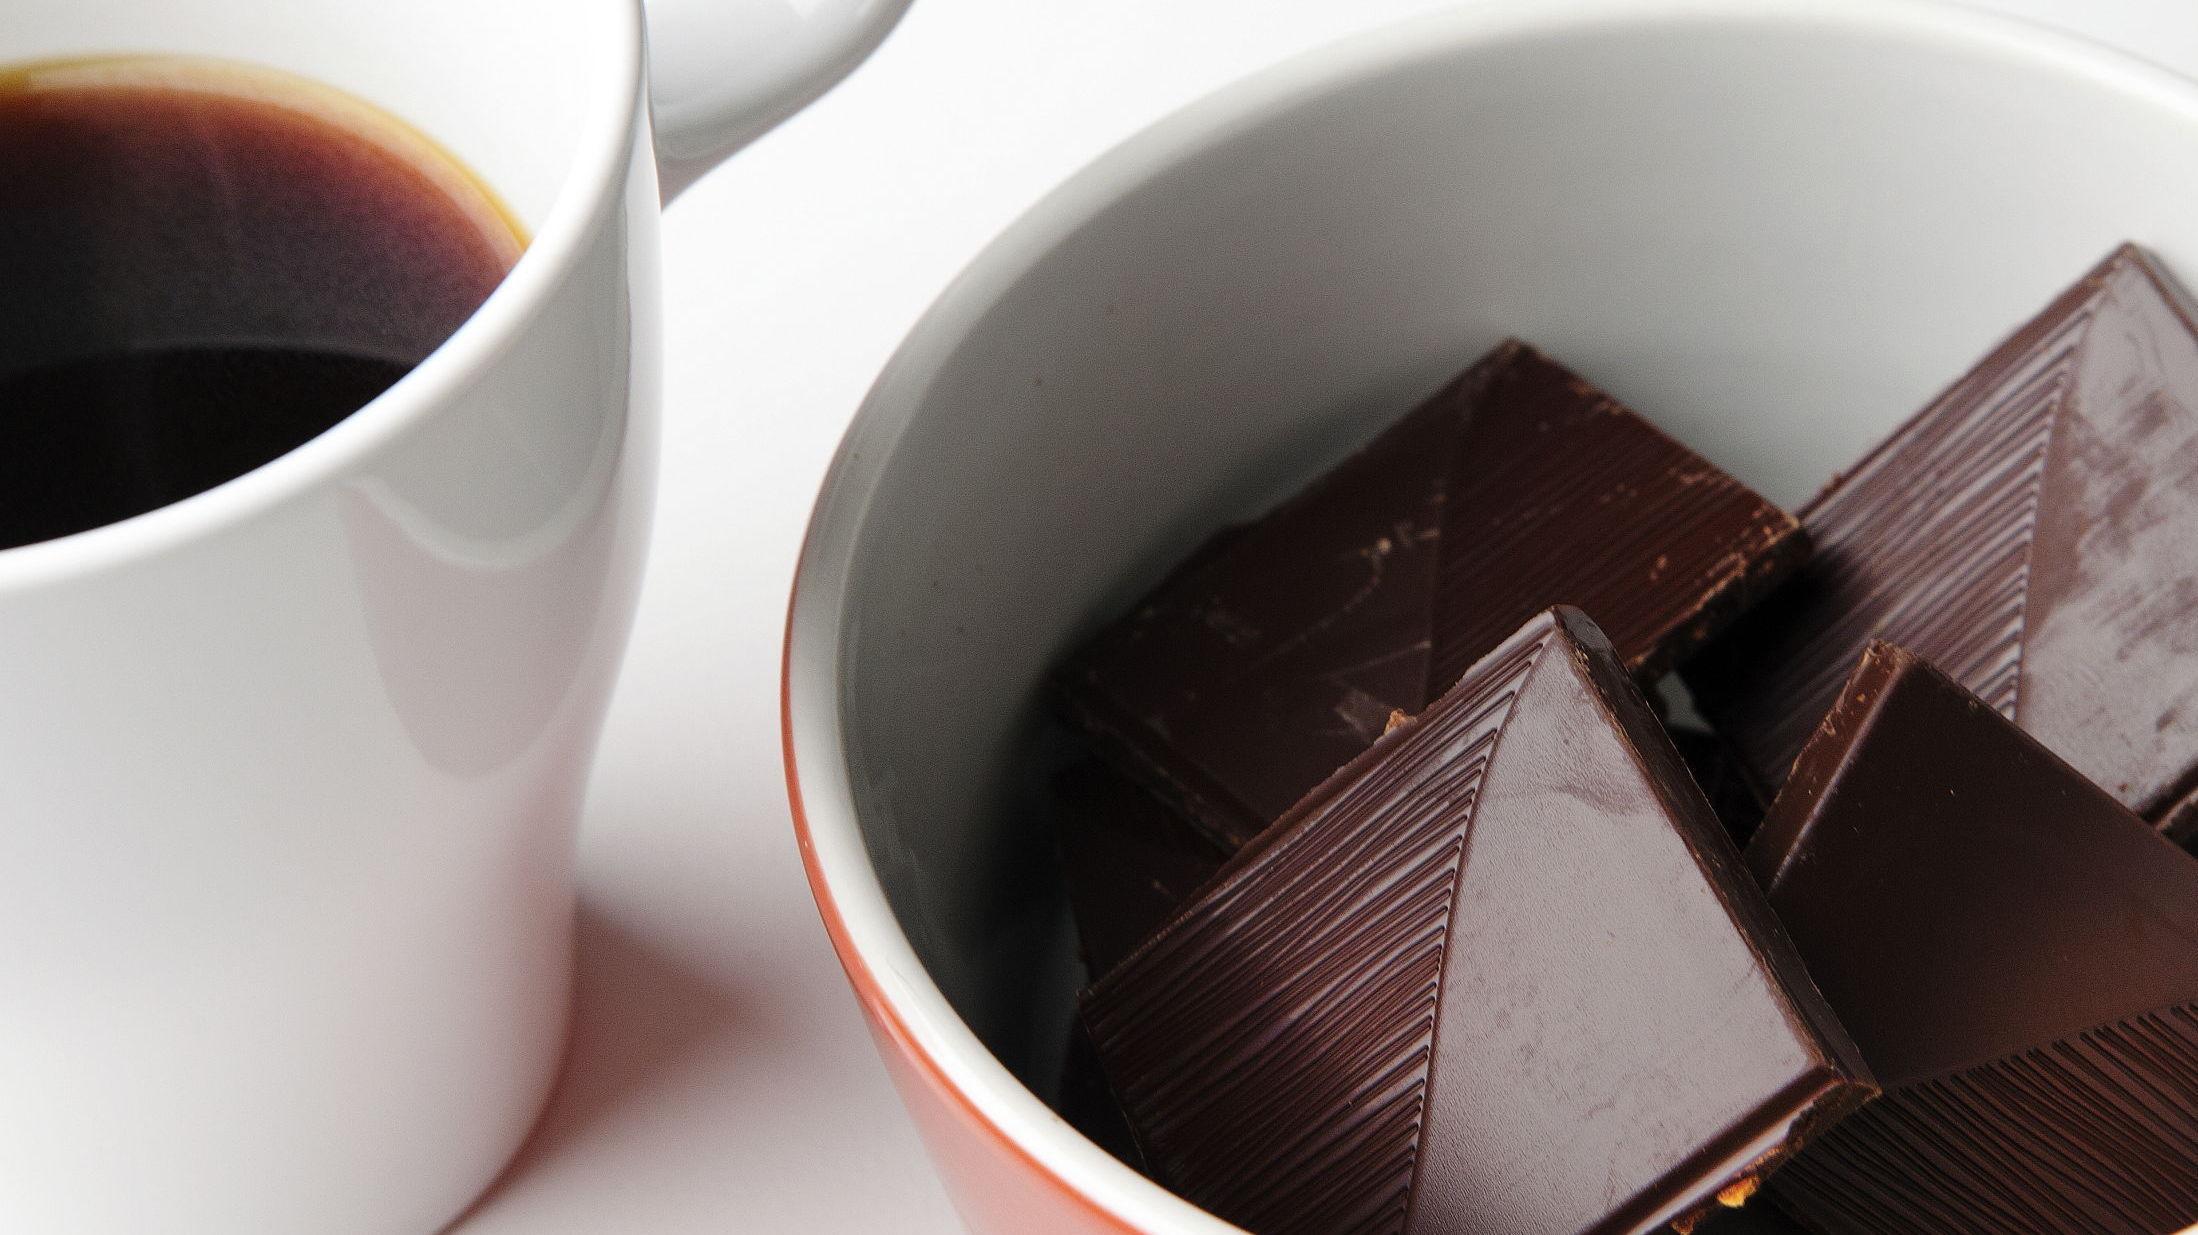 Mørk sjokolade: De fleste får- i alle fall kortvarig – bedre humør av sjokolade. En liten bit mørk sjokolade kan øke din energi og ditt humør. Mørk sjokolade med minst 70 prosent kakao og helst sukkerfri er rik på antioksidanter som beskytter kroppens og hjernens celler og inneholder koffein og teobromin som virker oppkvikkende. FOTO: MAGNAR KIRKNES/VG